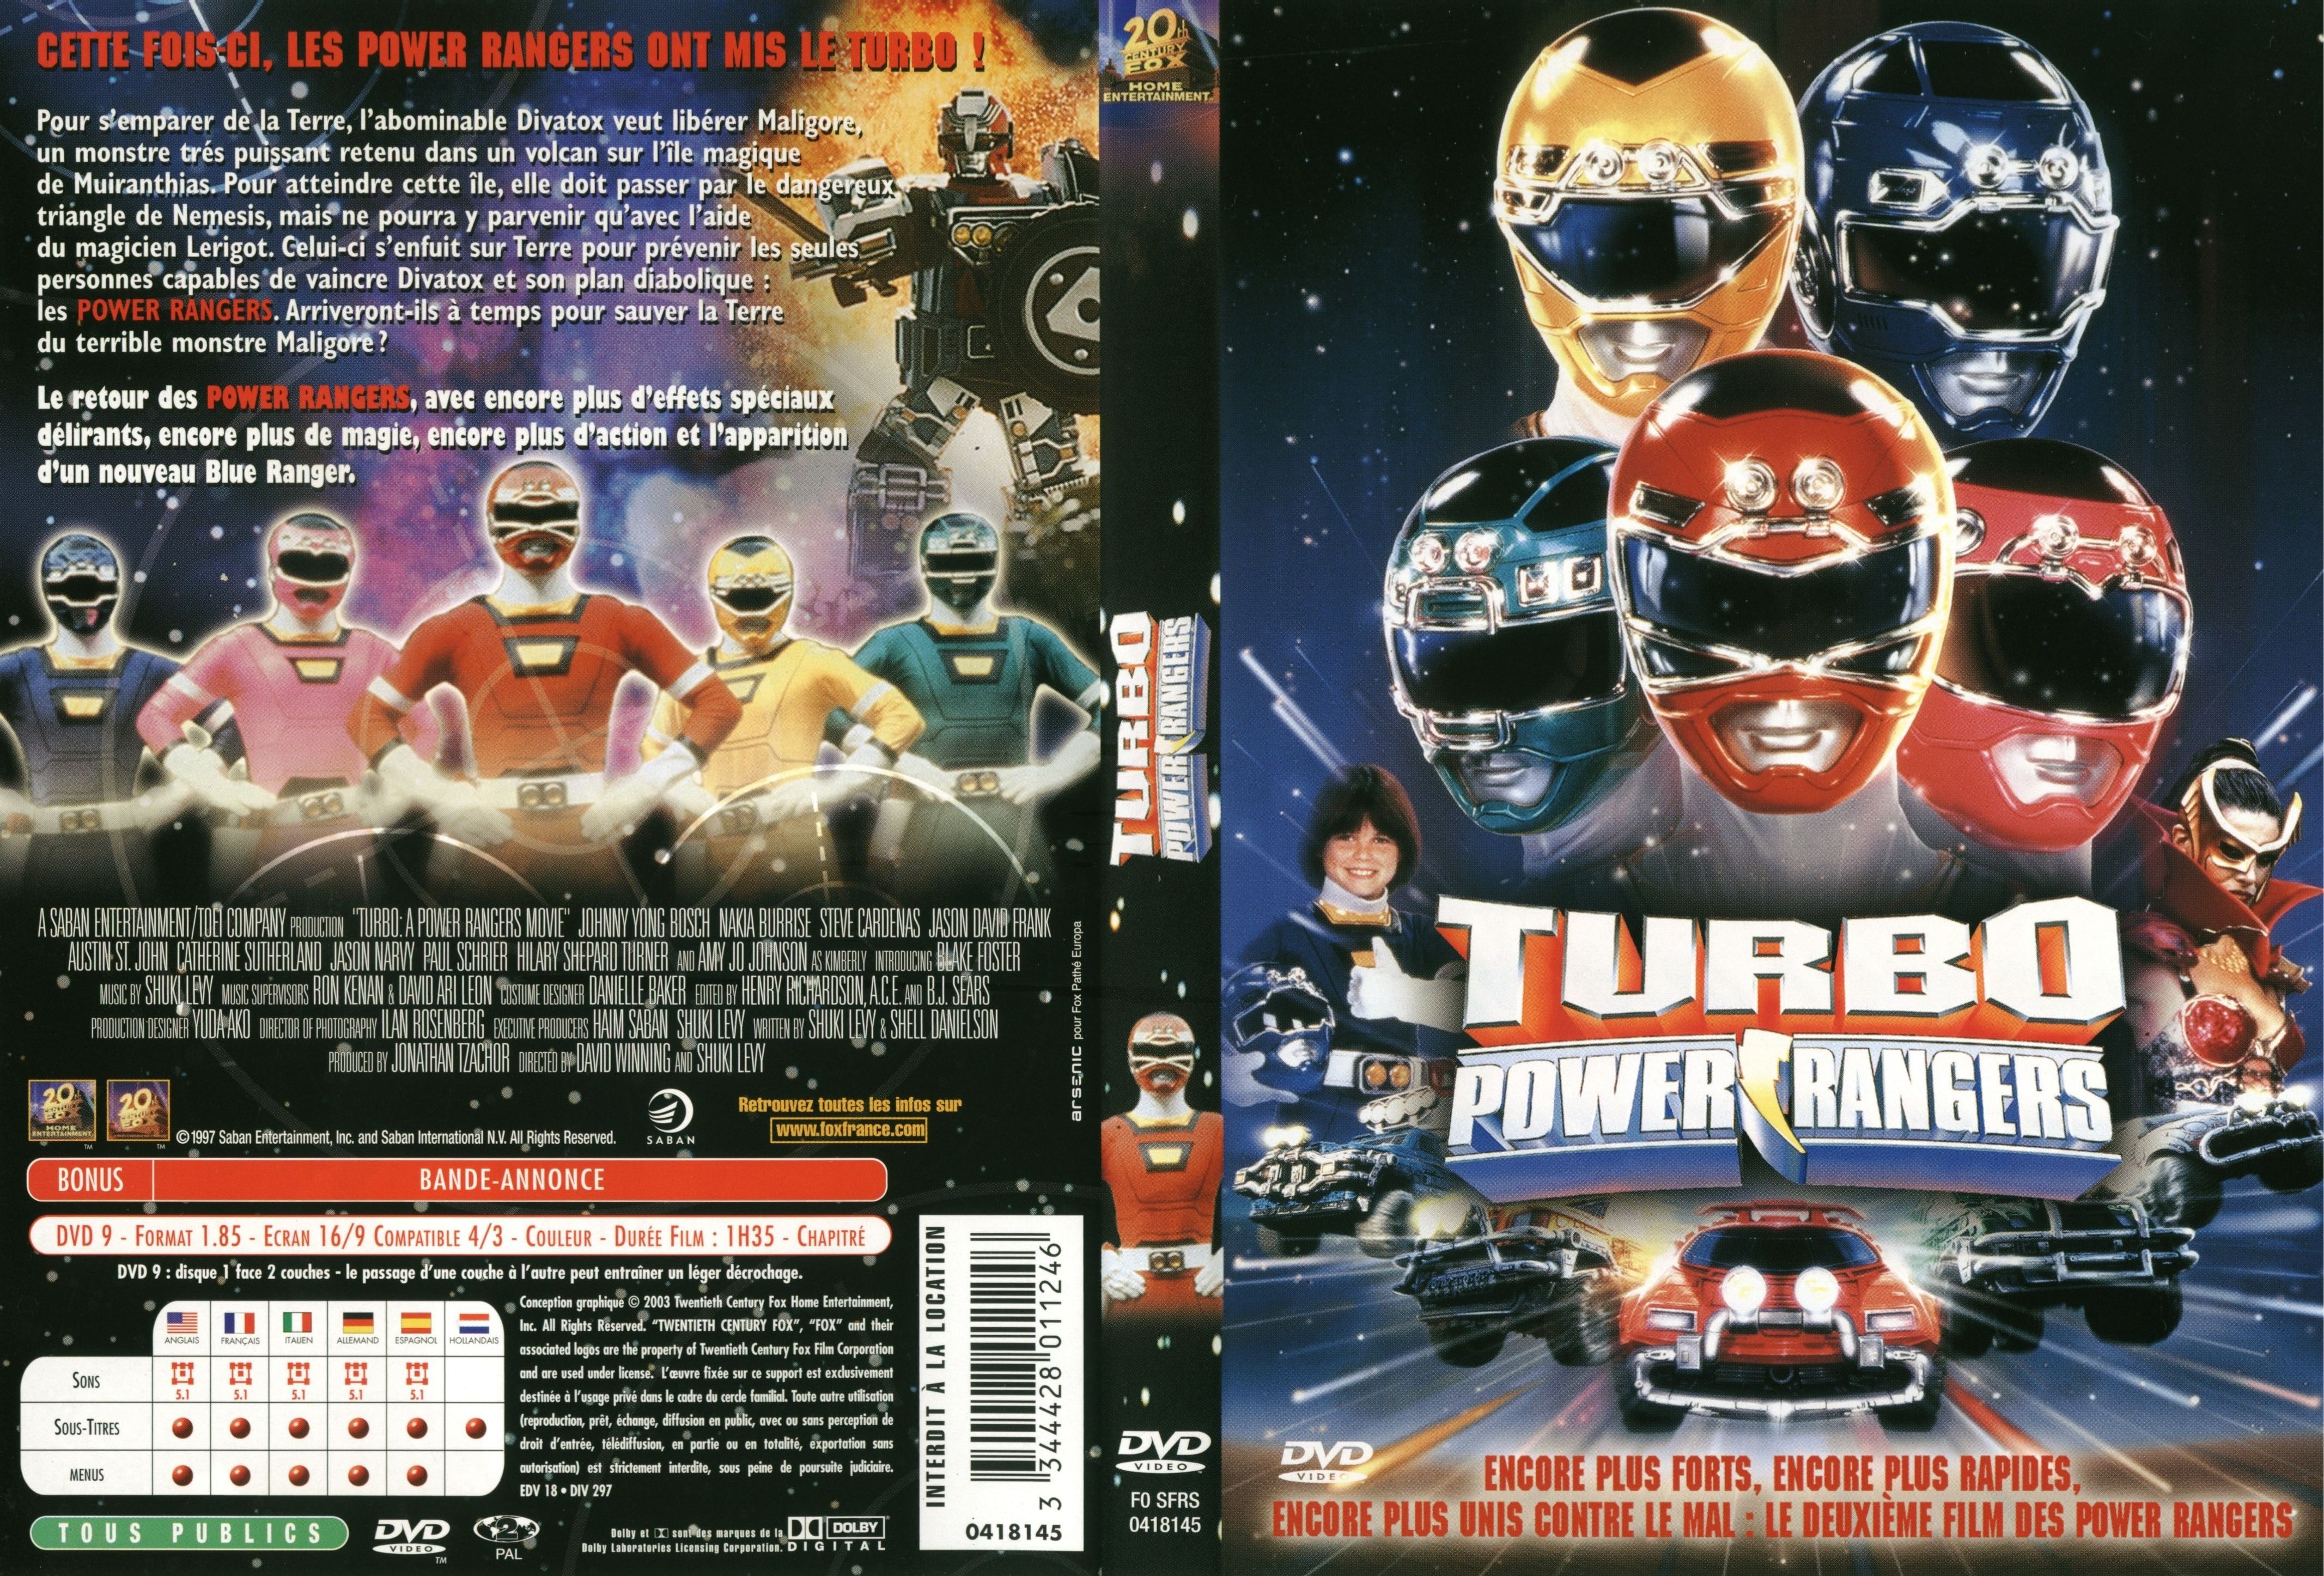 Jaquette DVD de Turbo power rangers Cinéma Passion